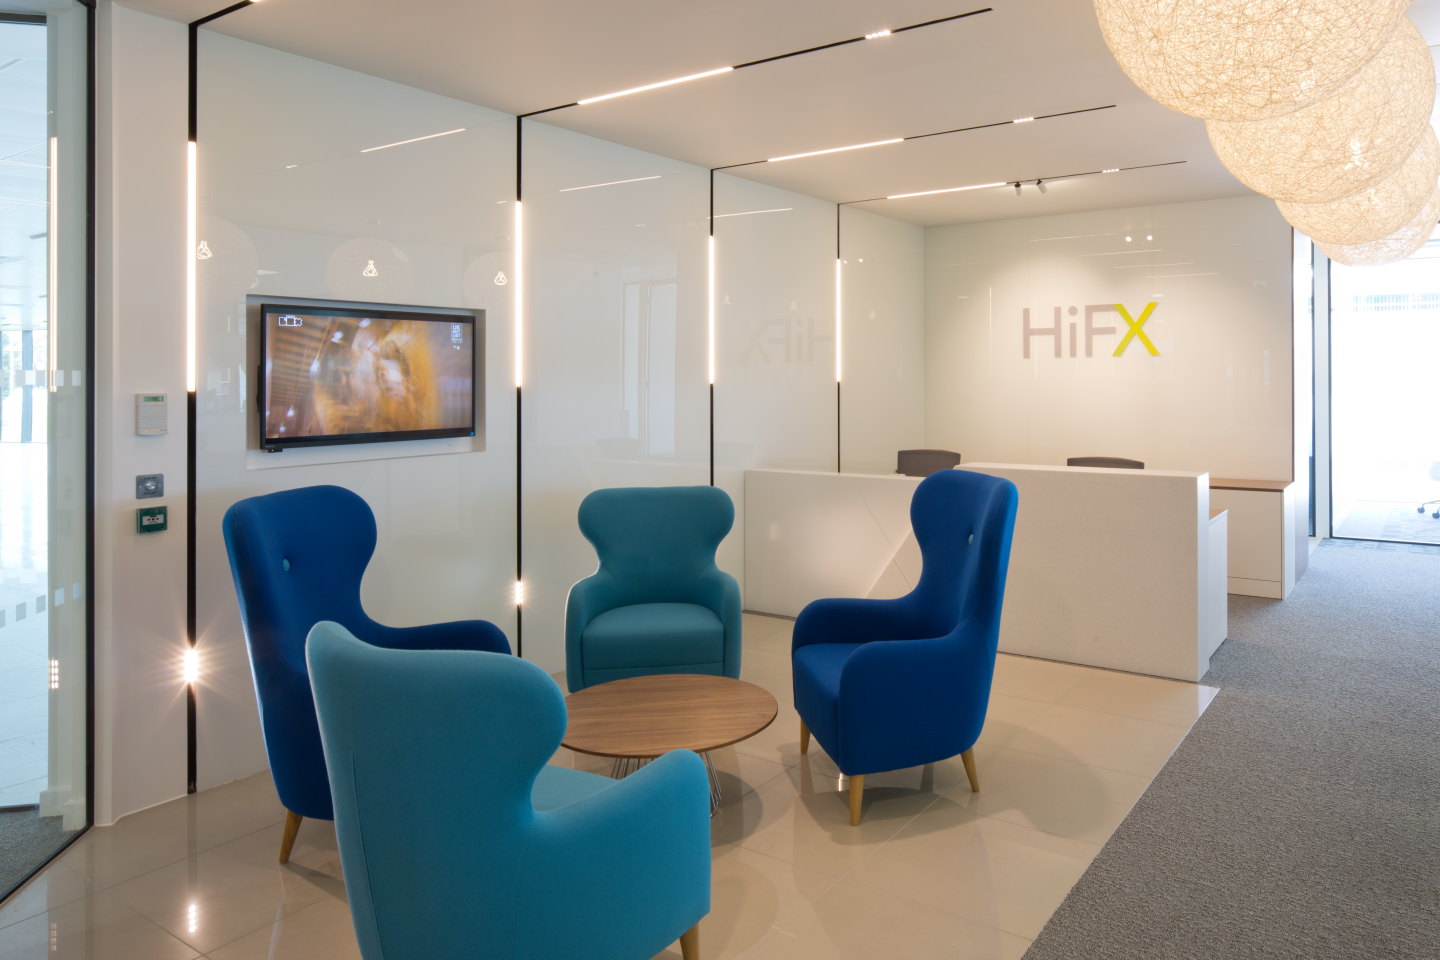 Hi FX Reception counter